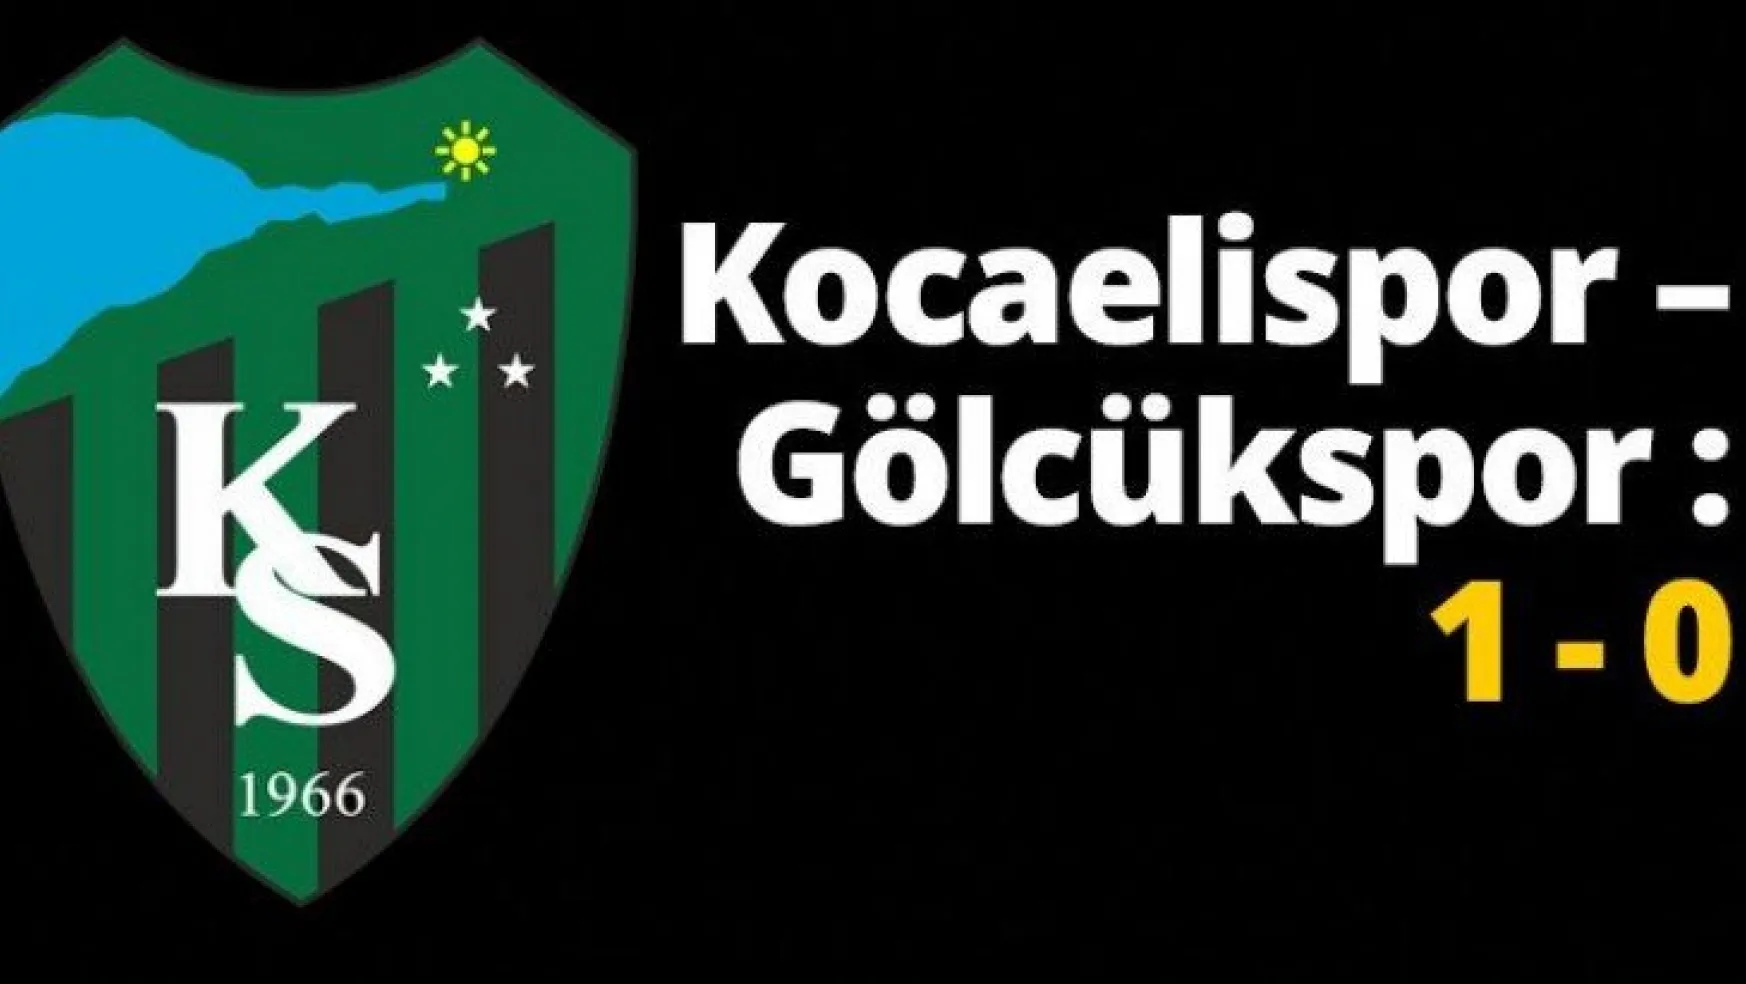 Kocaelispor – Gölcükspor : 1 - 0